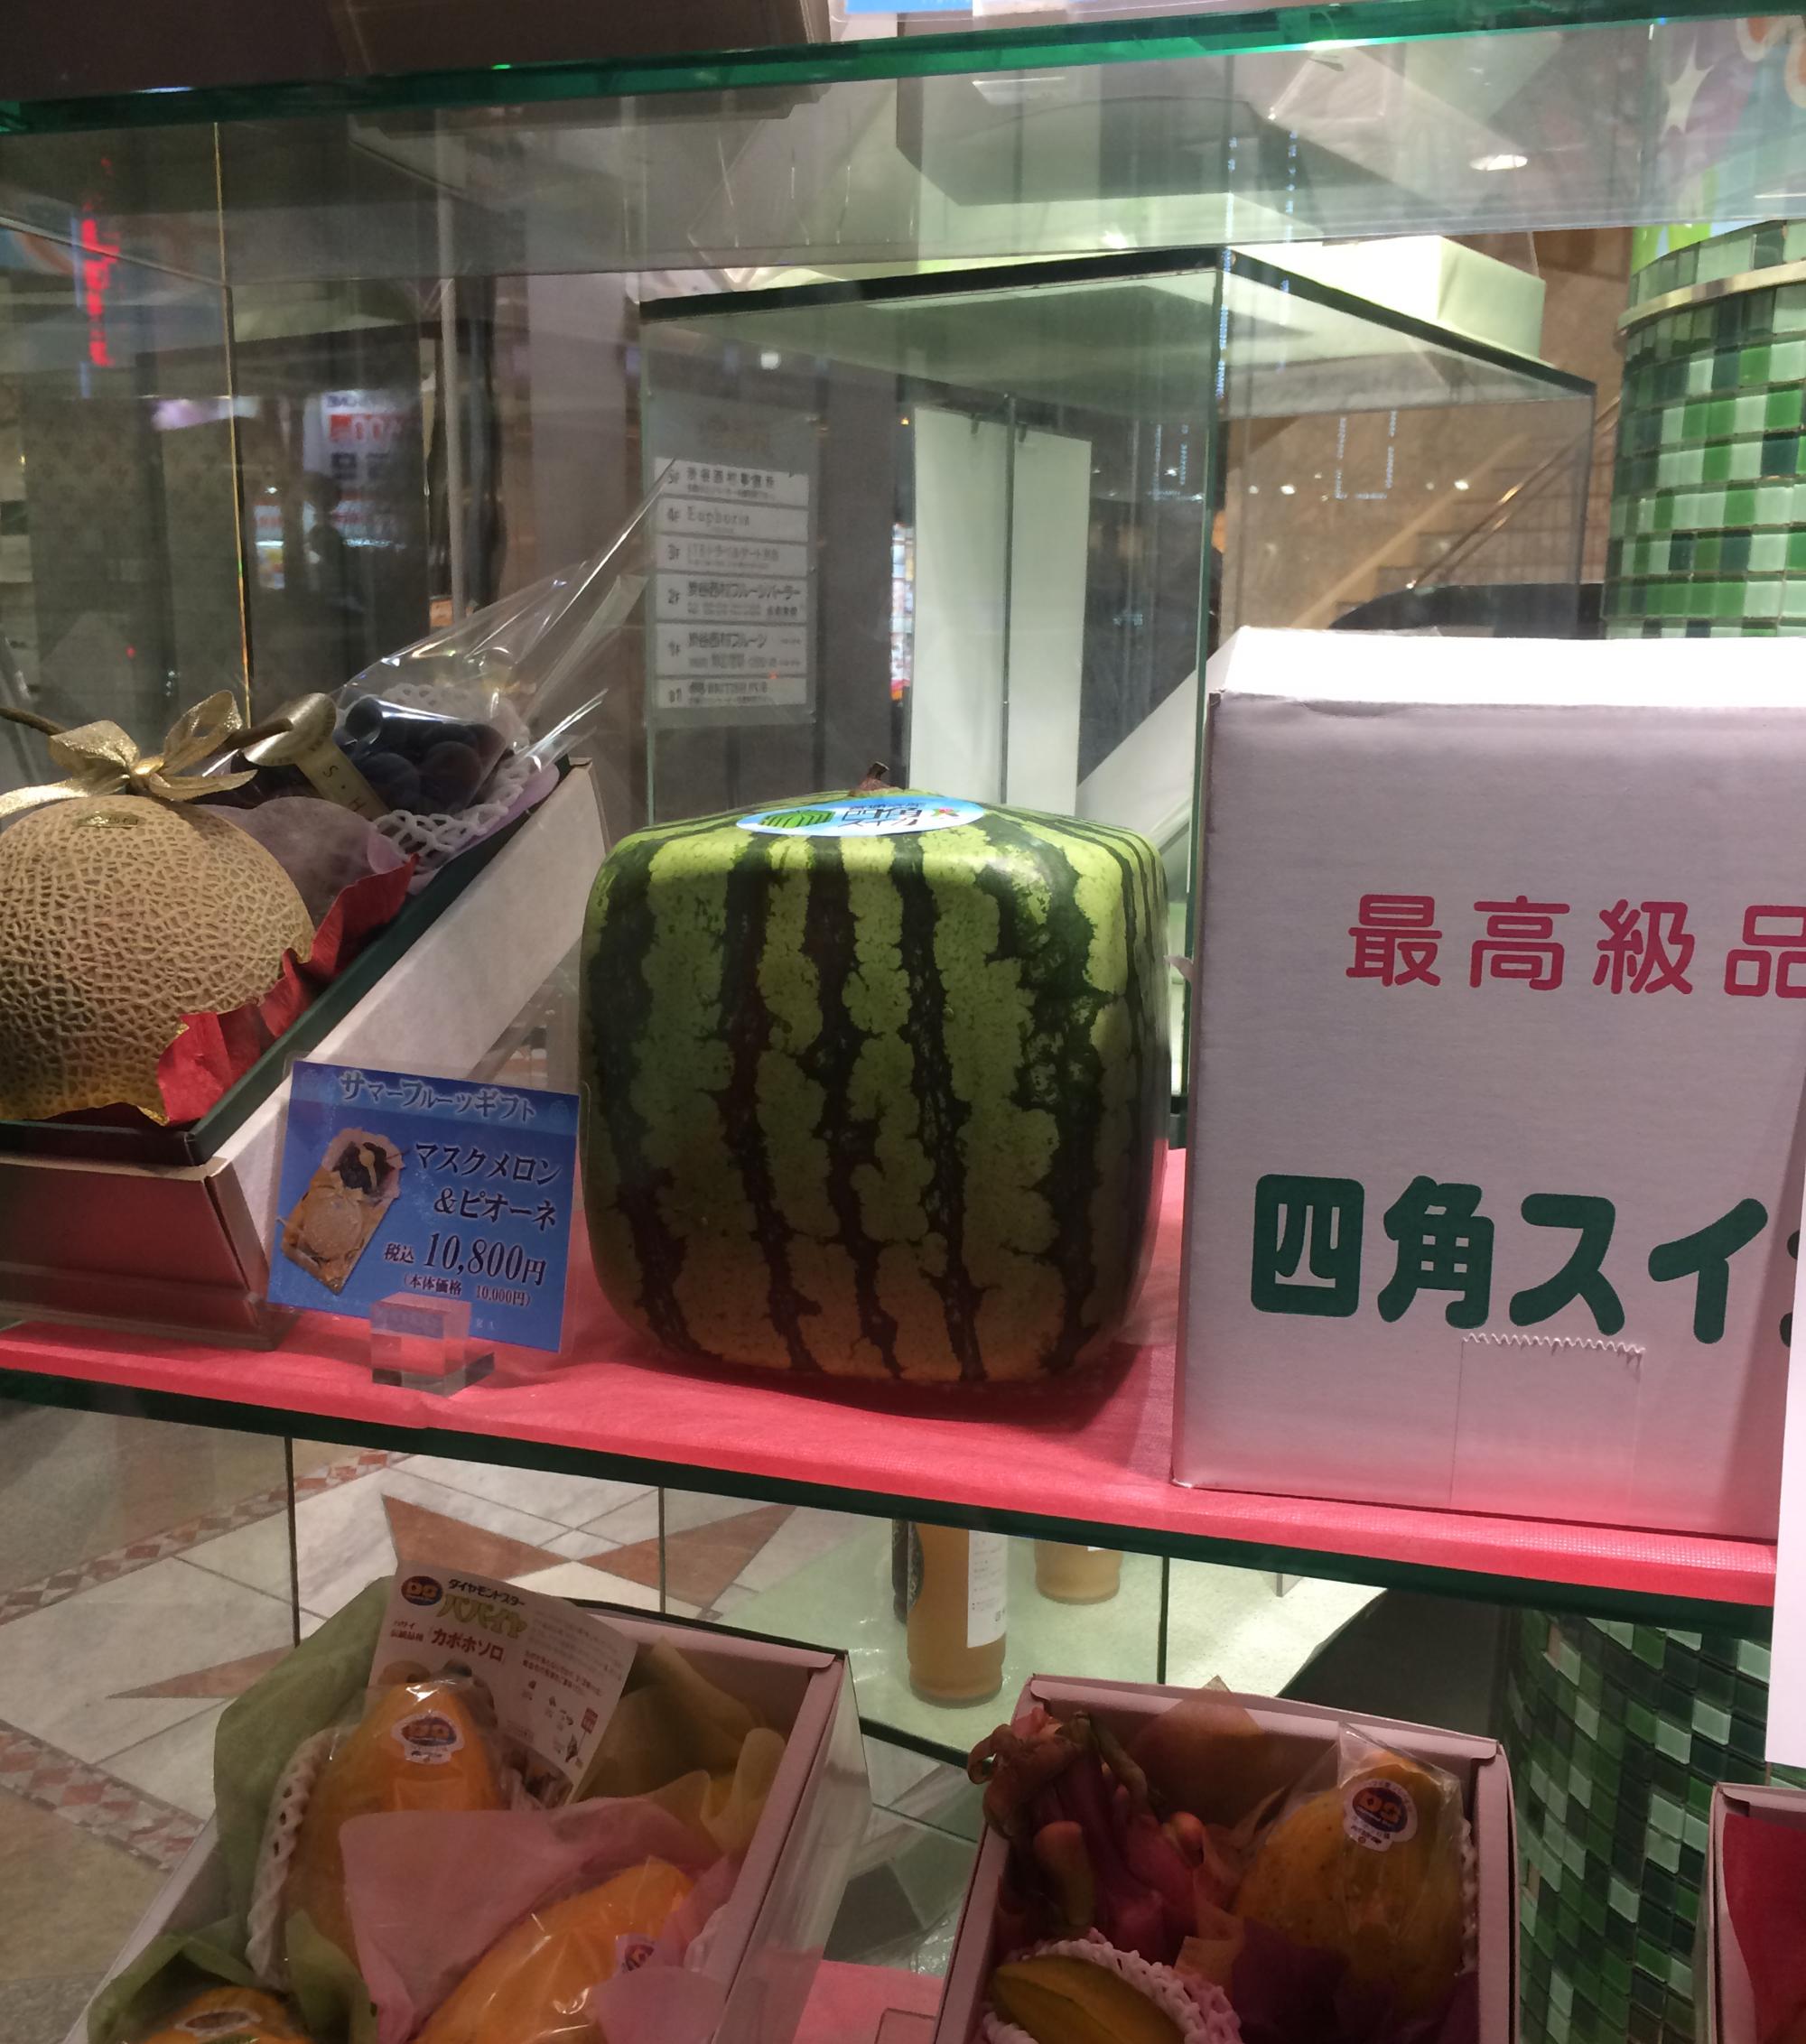 Tokyo (2016) - Square Watermelon